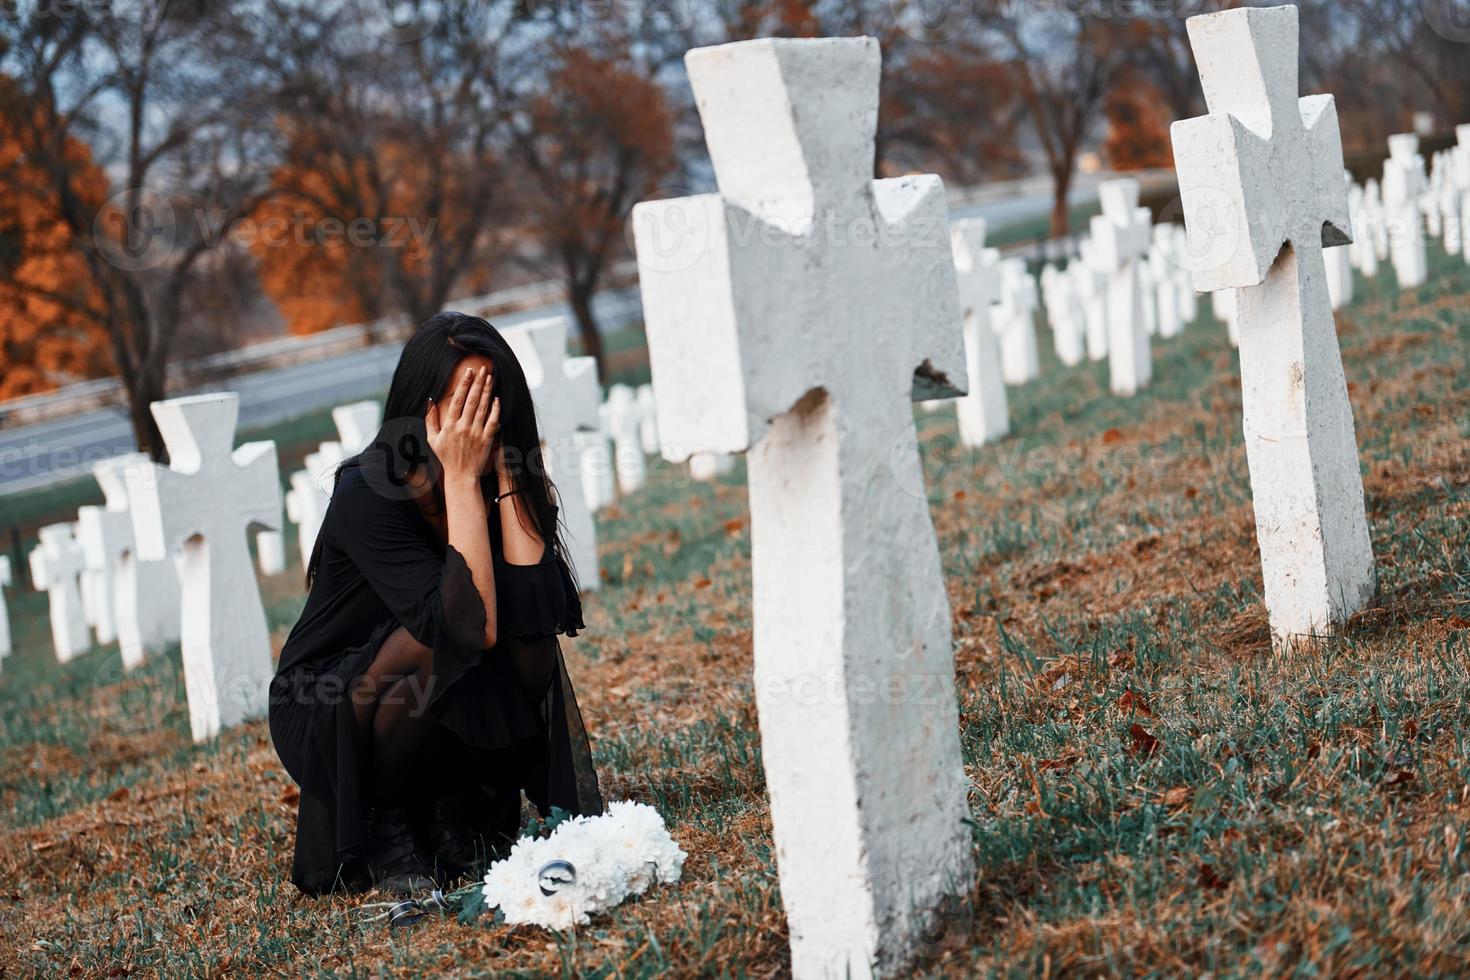 met bloemen in handen. jong vrouw in zwart kleren bezoekende begraafplaats met veel wit kruisen. opvatting van begrafenis en dood foto